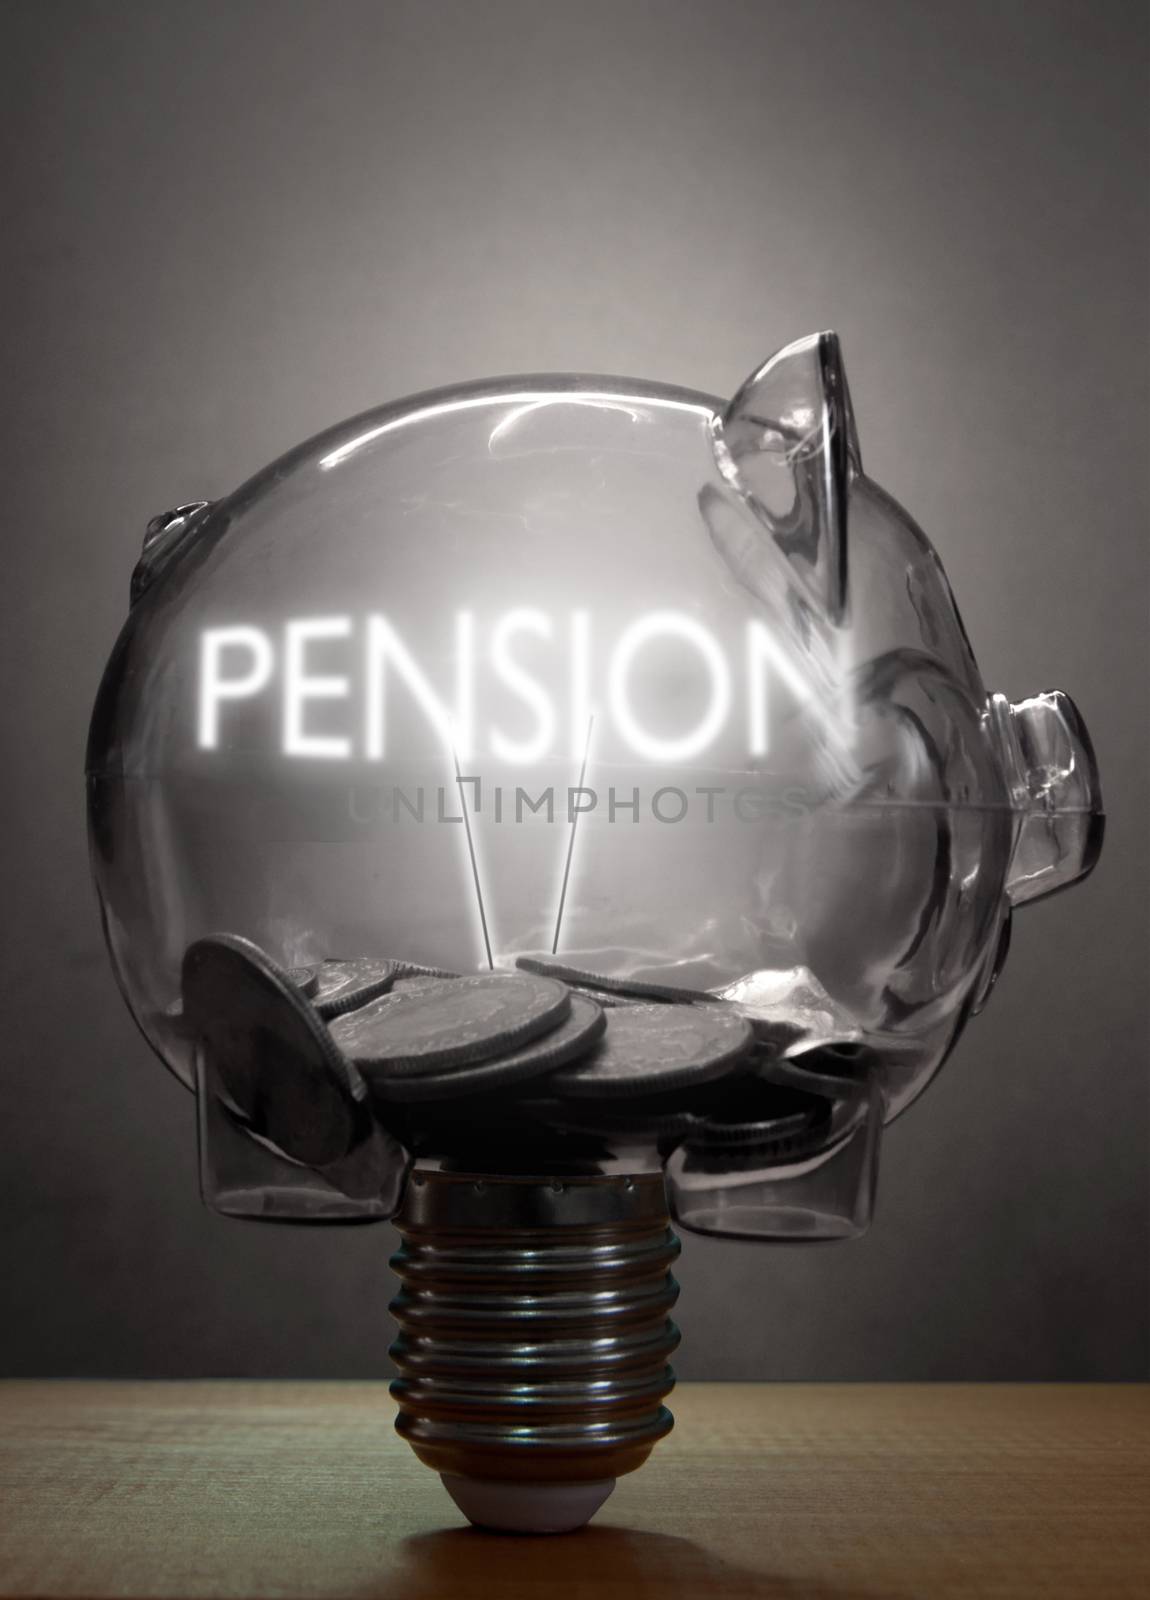 Pension retirement savings concept  by unikpix